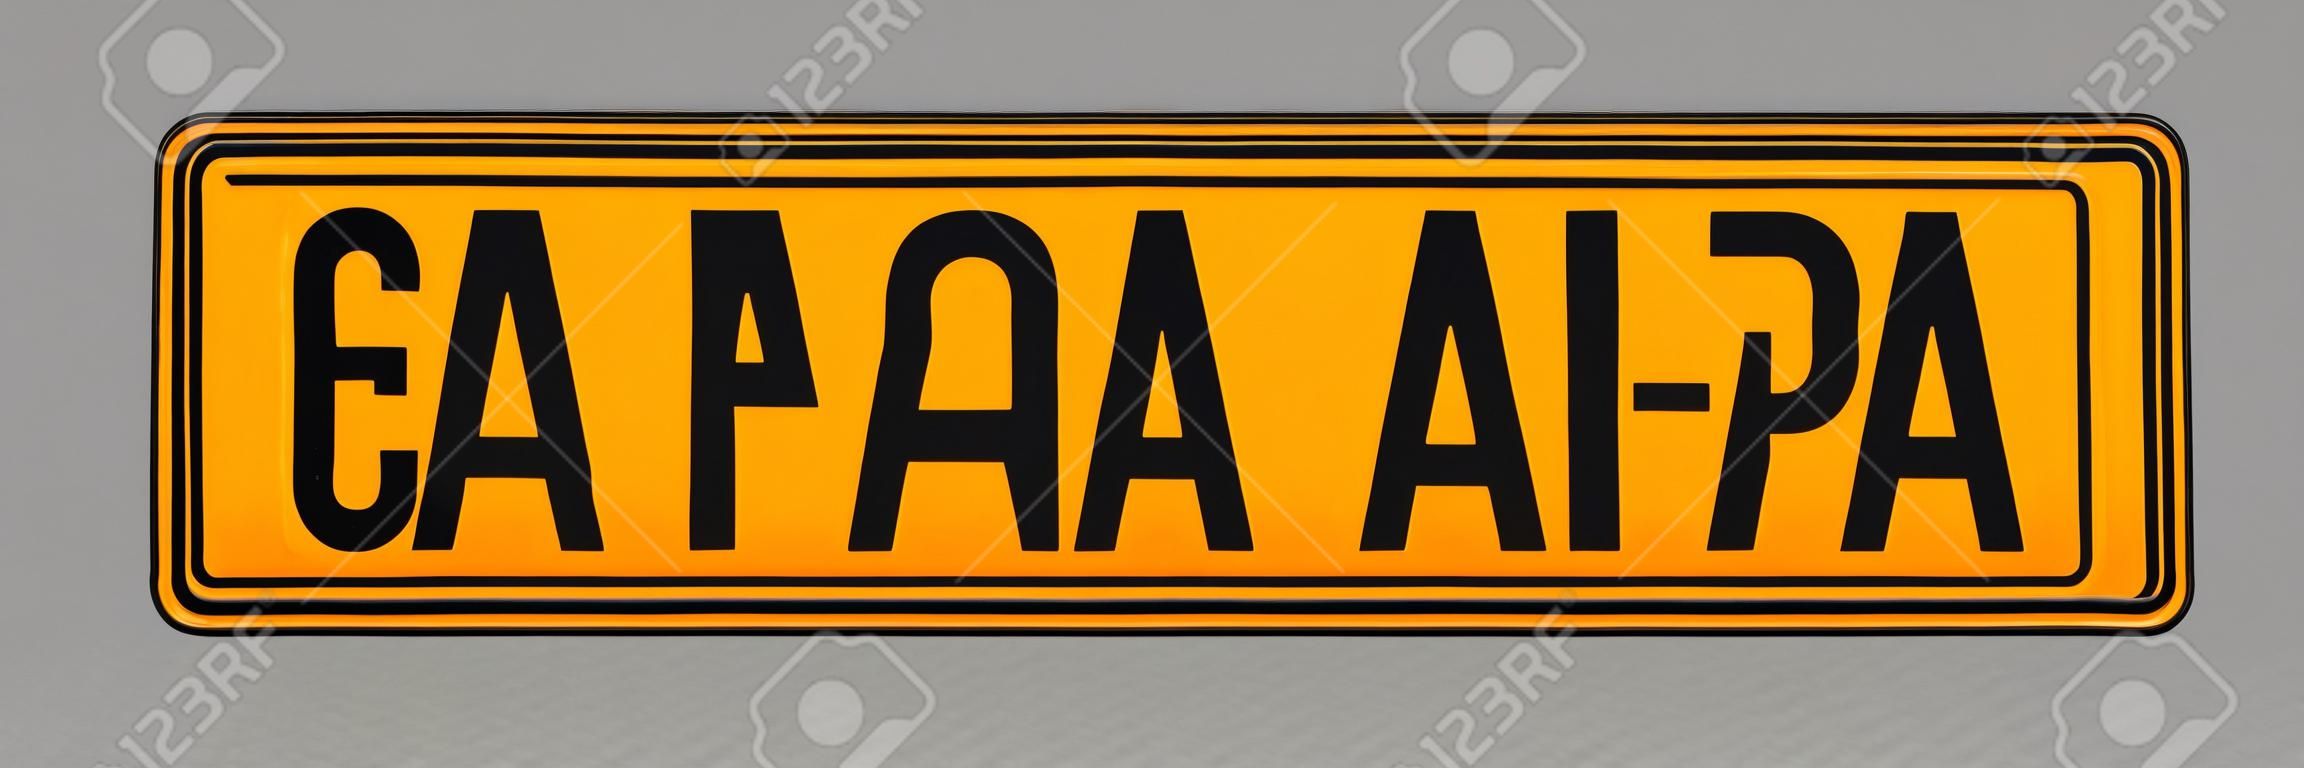 Number plate. Vehicle registration plates of Netherlands